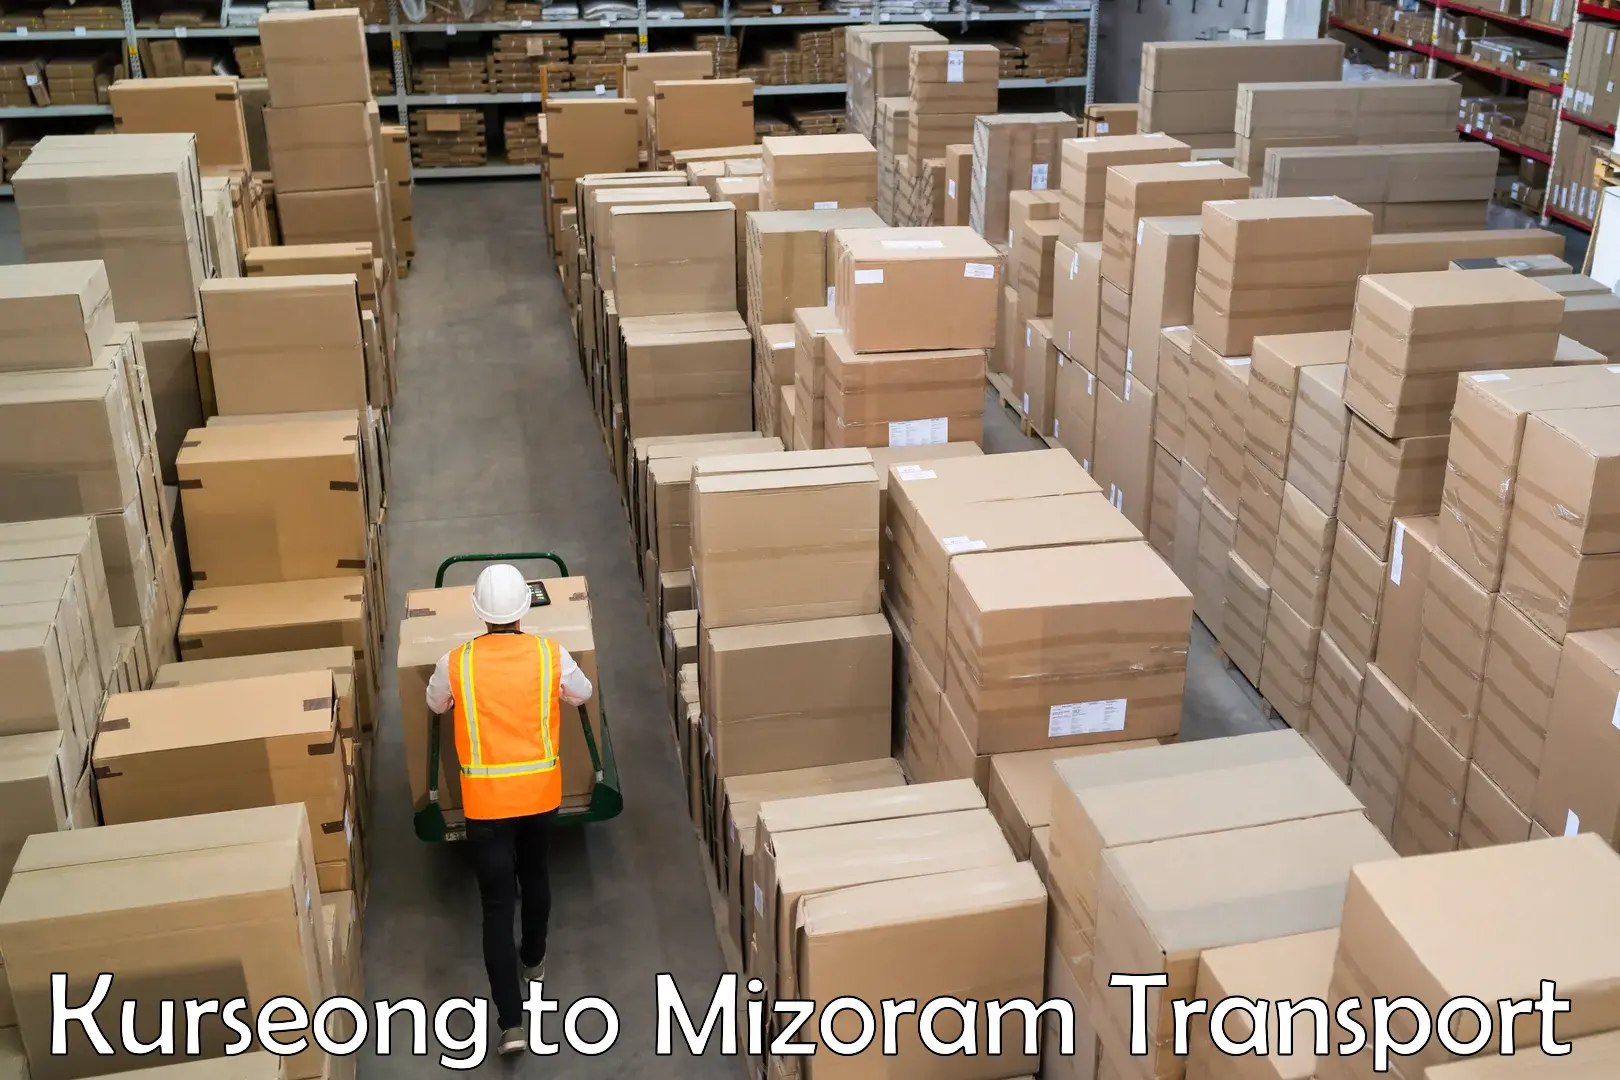 Daily transport service Kurseong to Mizoram